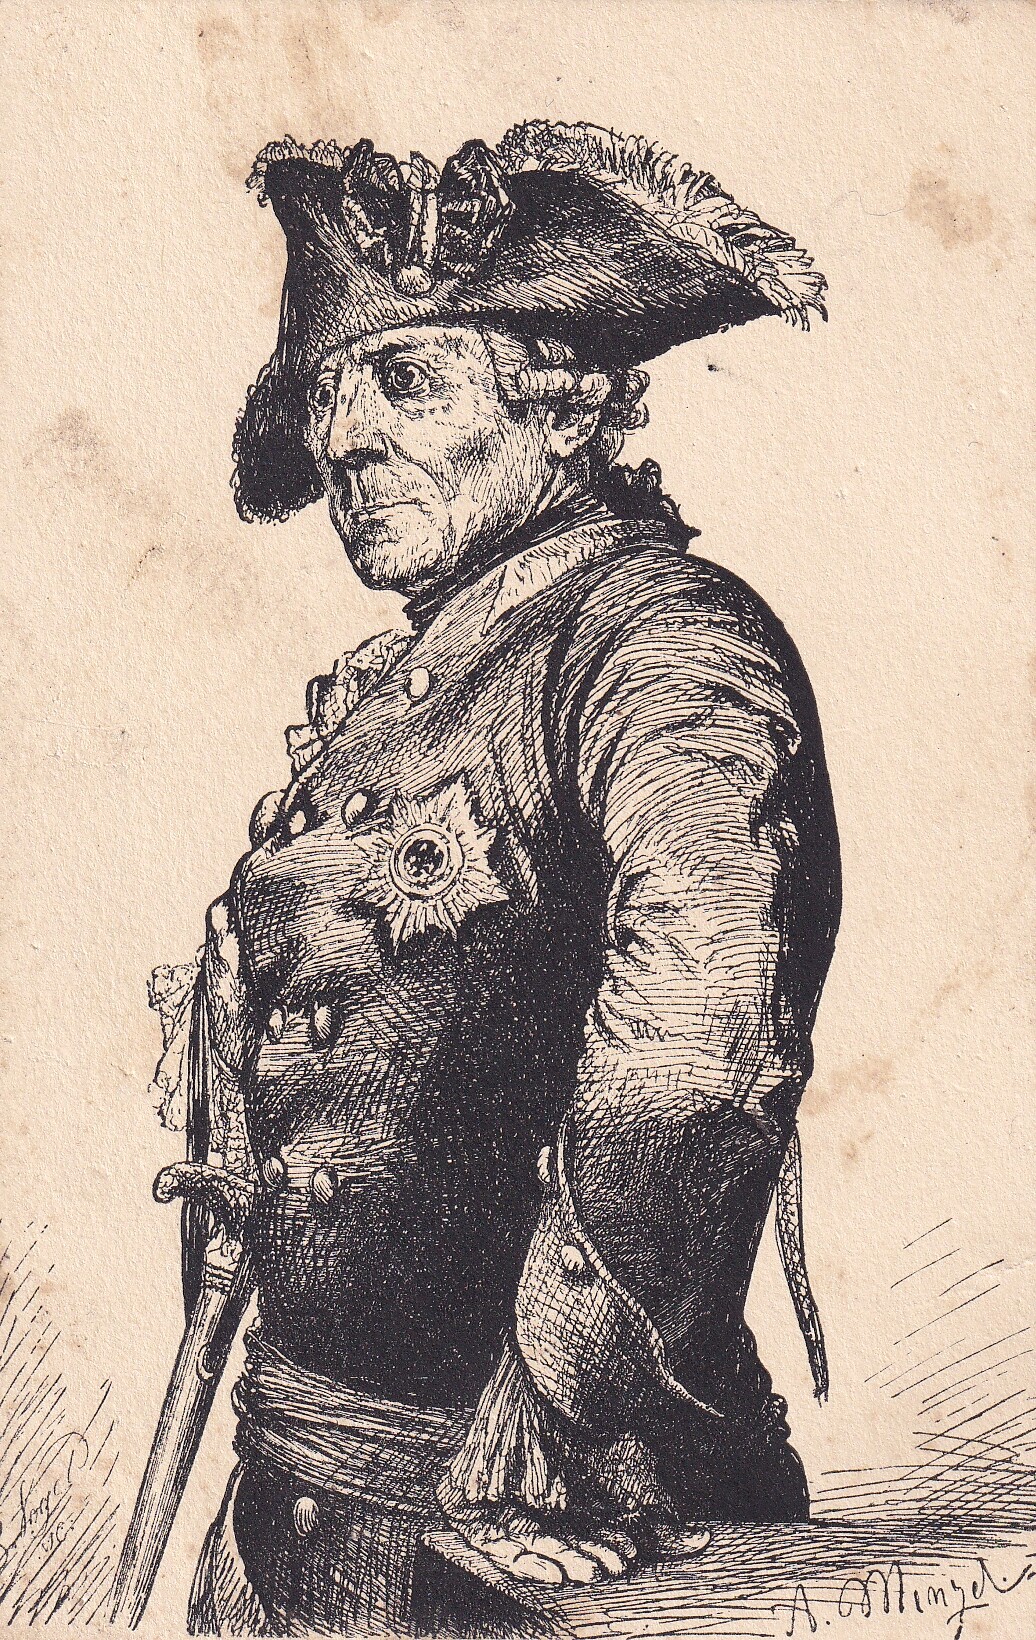 Bildpostkarte mit Reproduktion eines grafischen Porträts König Friedrichs II. von Preußen (1712-1786) von Adolph Menzel (1815-1905), um 1920 (Schloß Wernigerode GmbH RR-F)